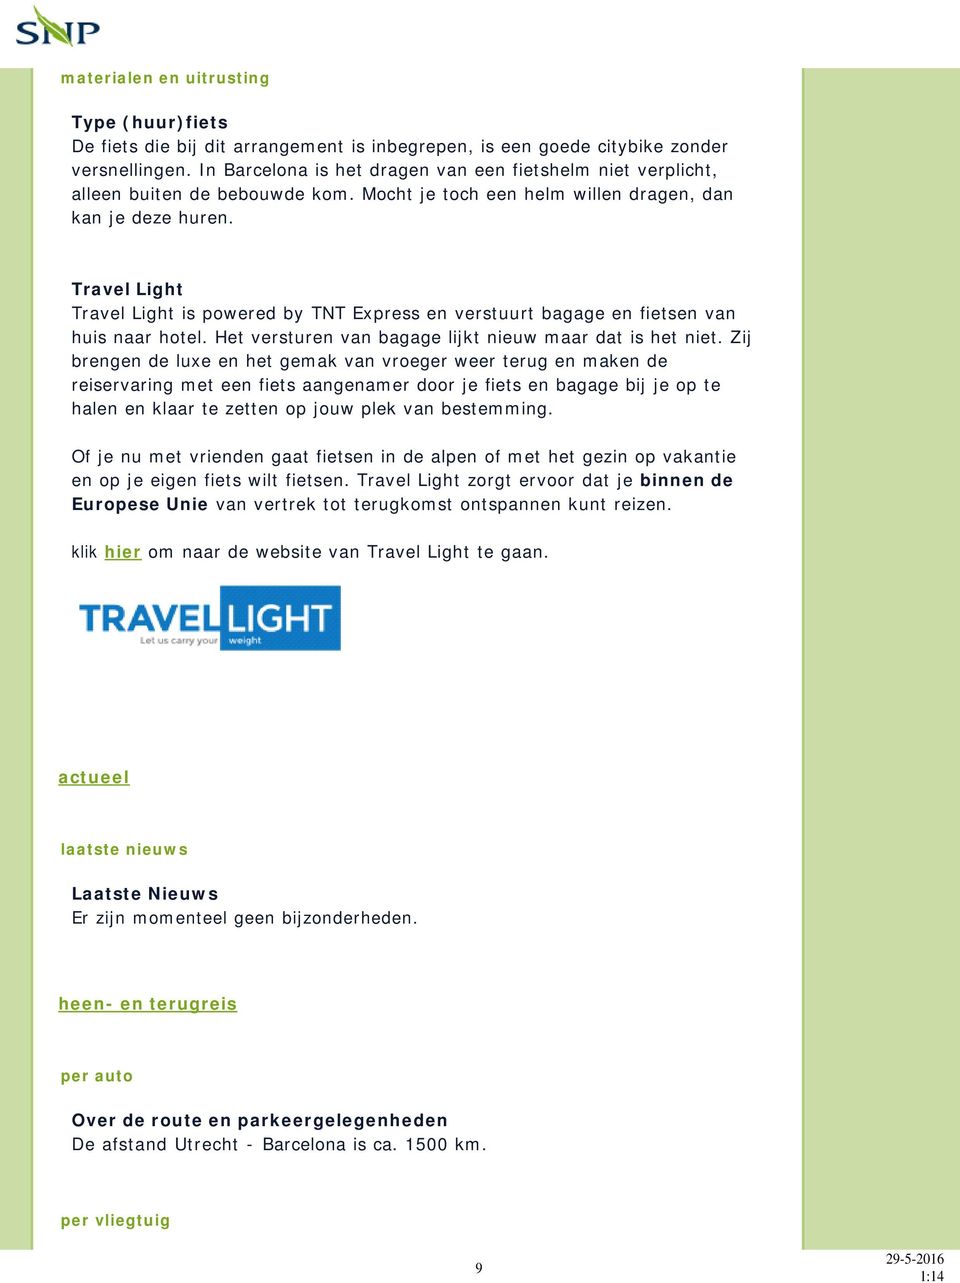 Travel Light Travel Light is powered by TNT Express en verstuurt bagage en fietsen van huis naar hotel. Het versturen van bagage lijkt nieuw maar dat is het niet.